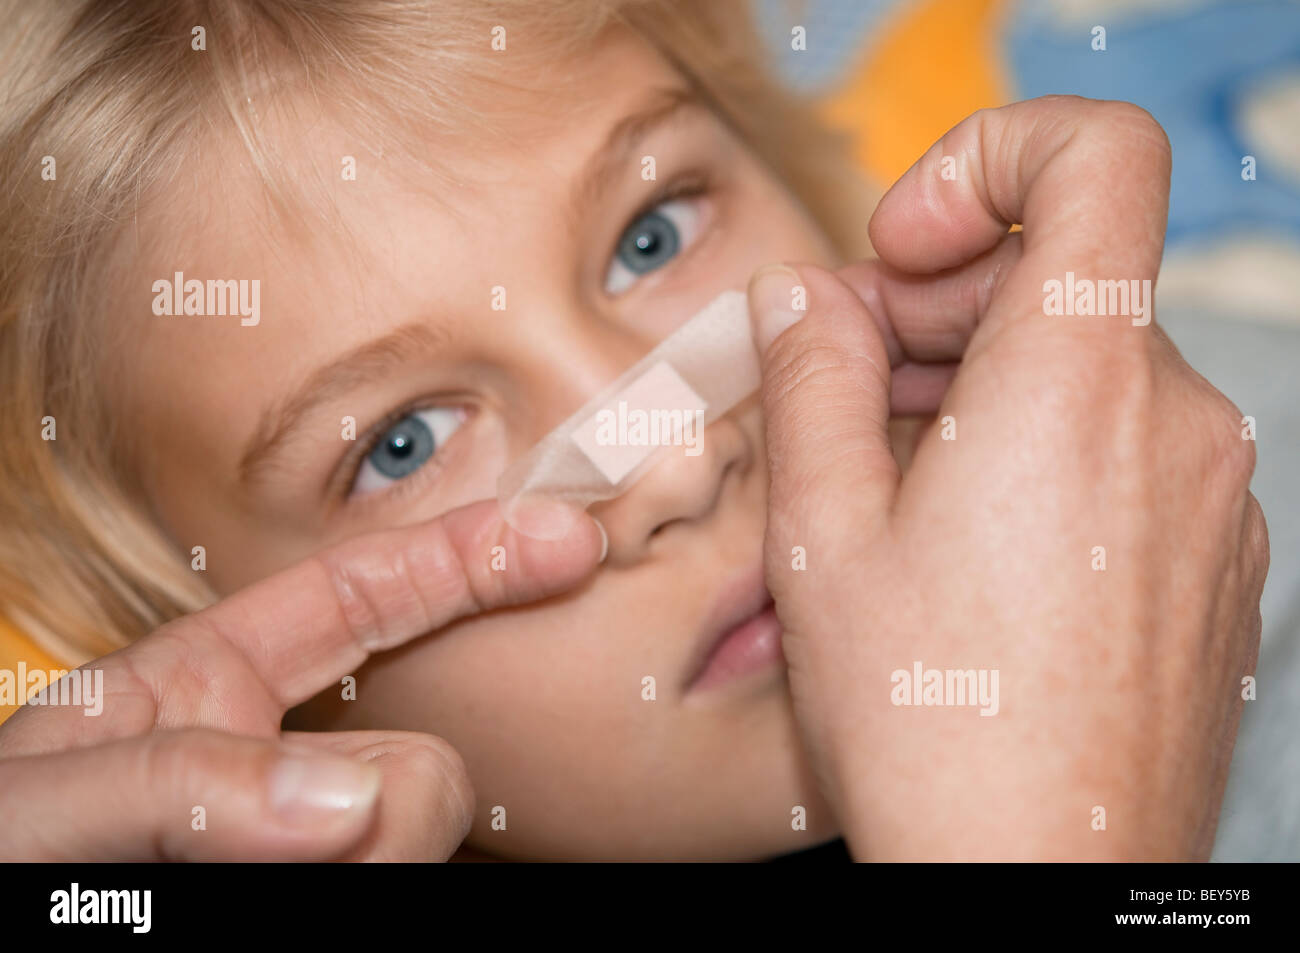 Junge mit Pflaster auf der Nase Stockfotografie - Alamy